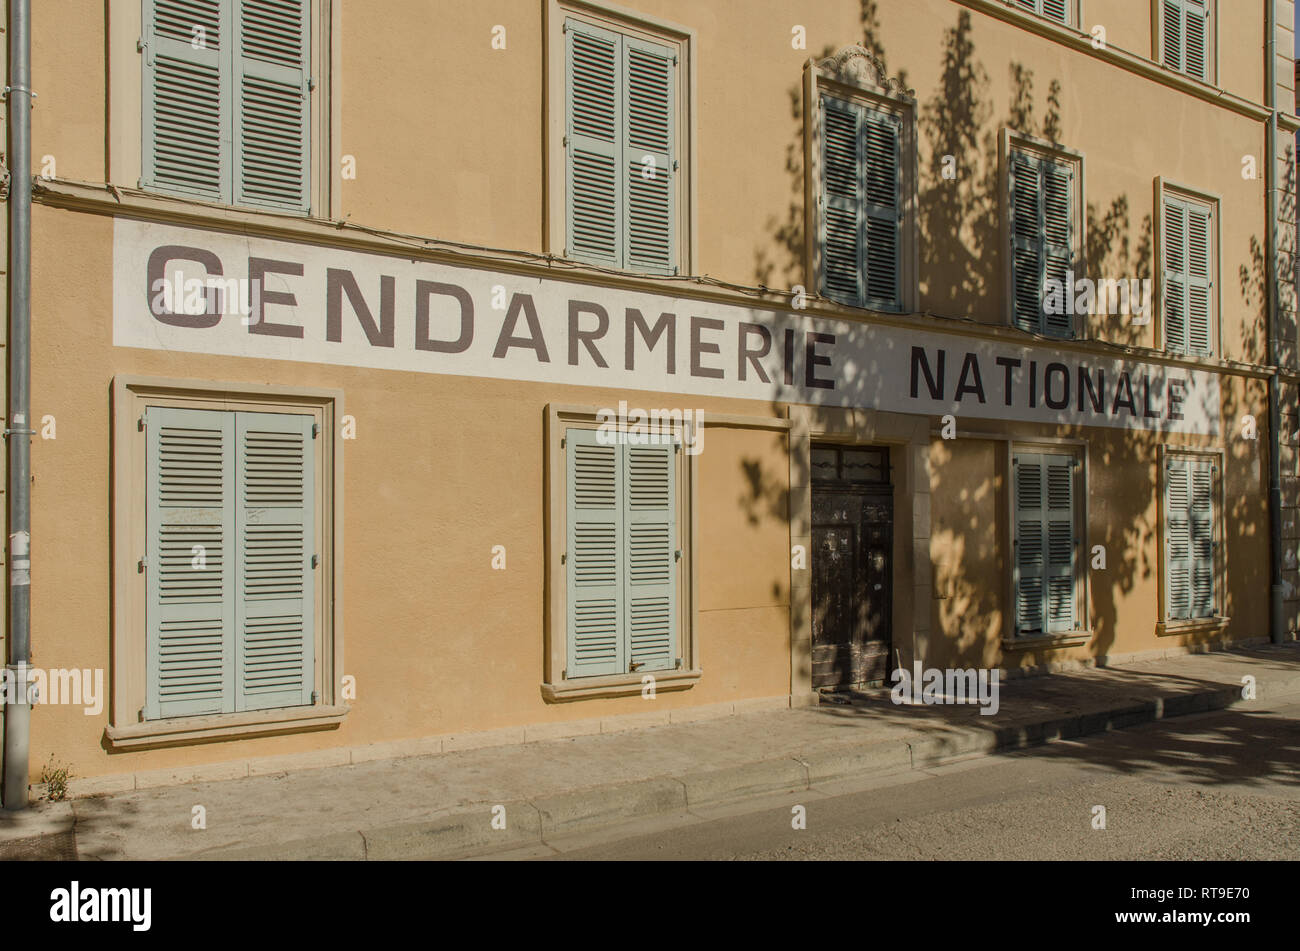 SAINT TROPEZ FRANCIA SEP 2018 gendarmerie nationale edificio dove i film con Louis de Funes furono girati a Saint Tropez town, Provenza, Francia Foto Stock